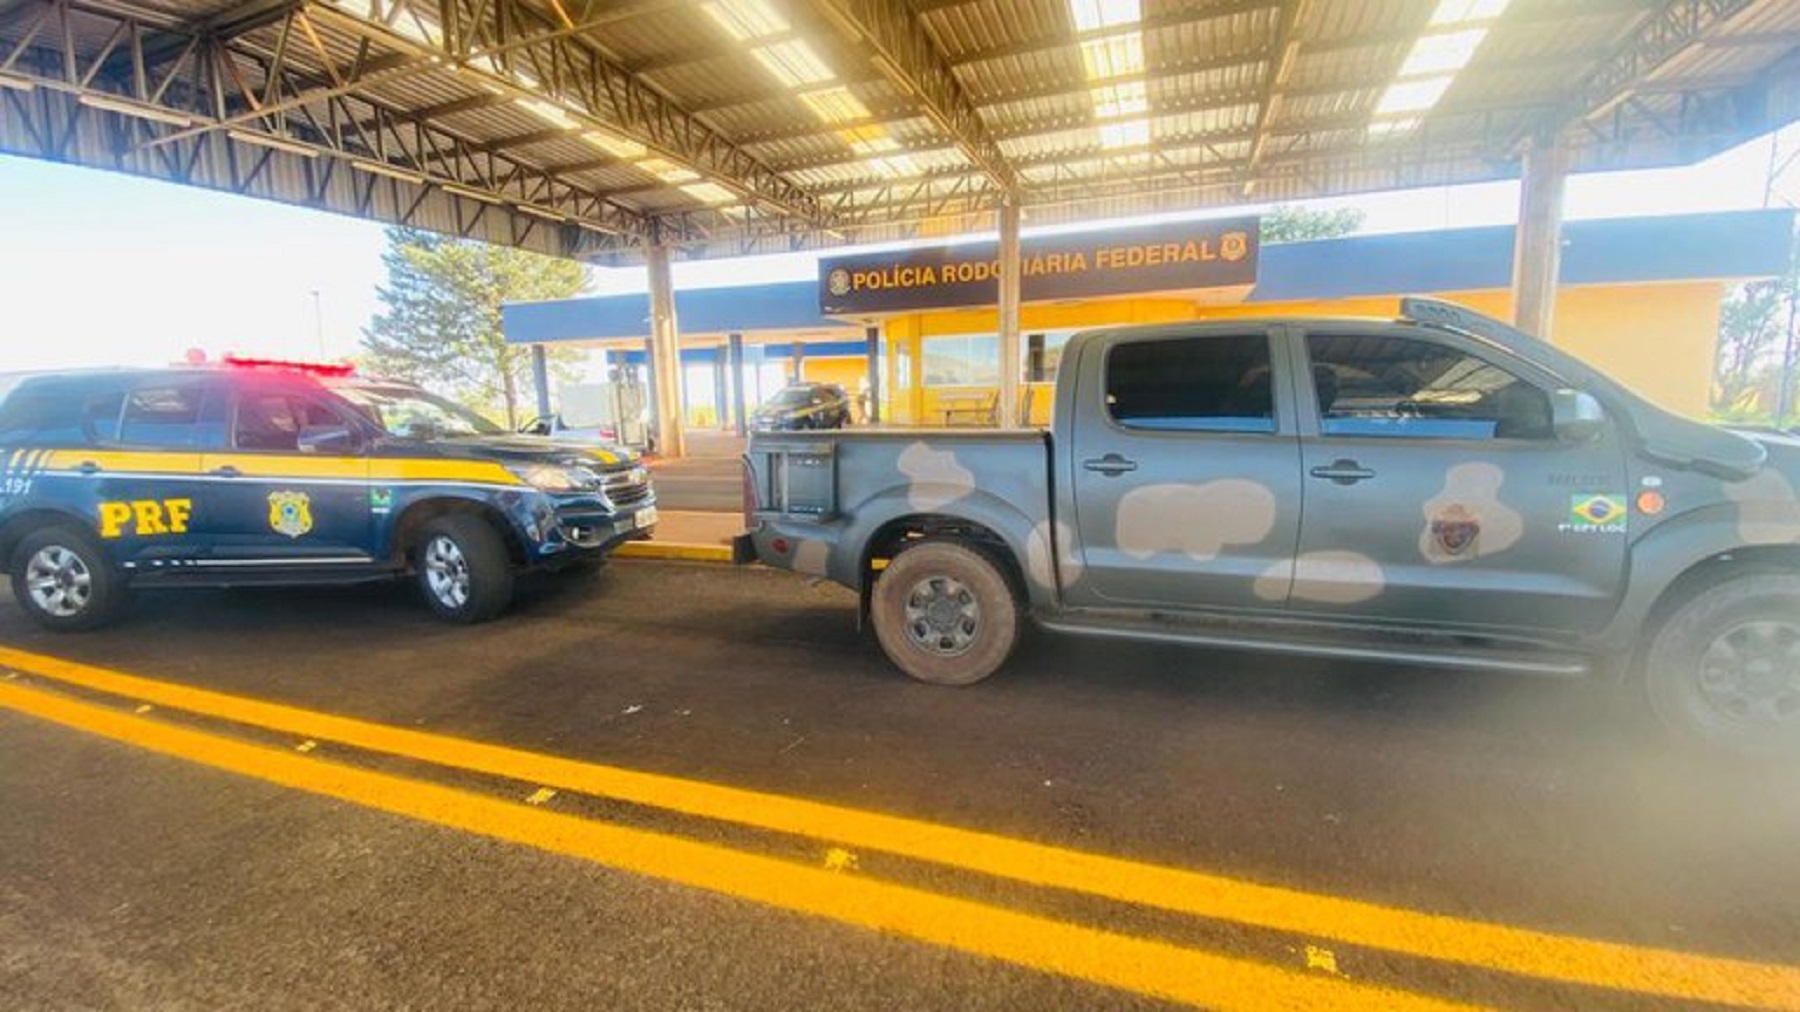 PRF apreender carga de maconha transportada em falso veículo do exército brasileiro